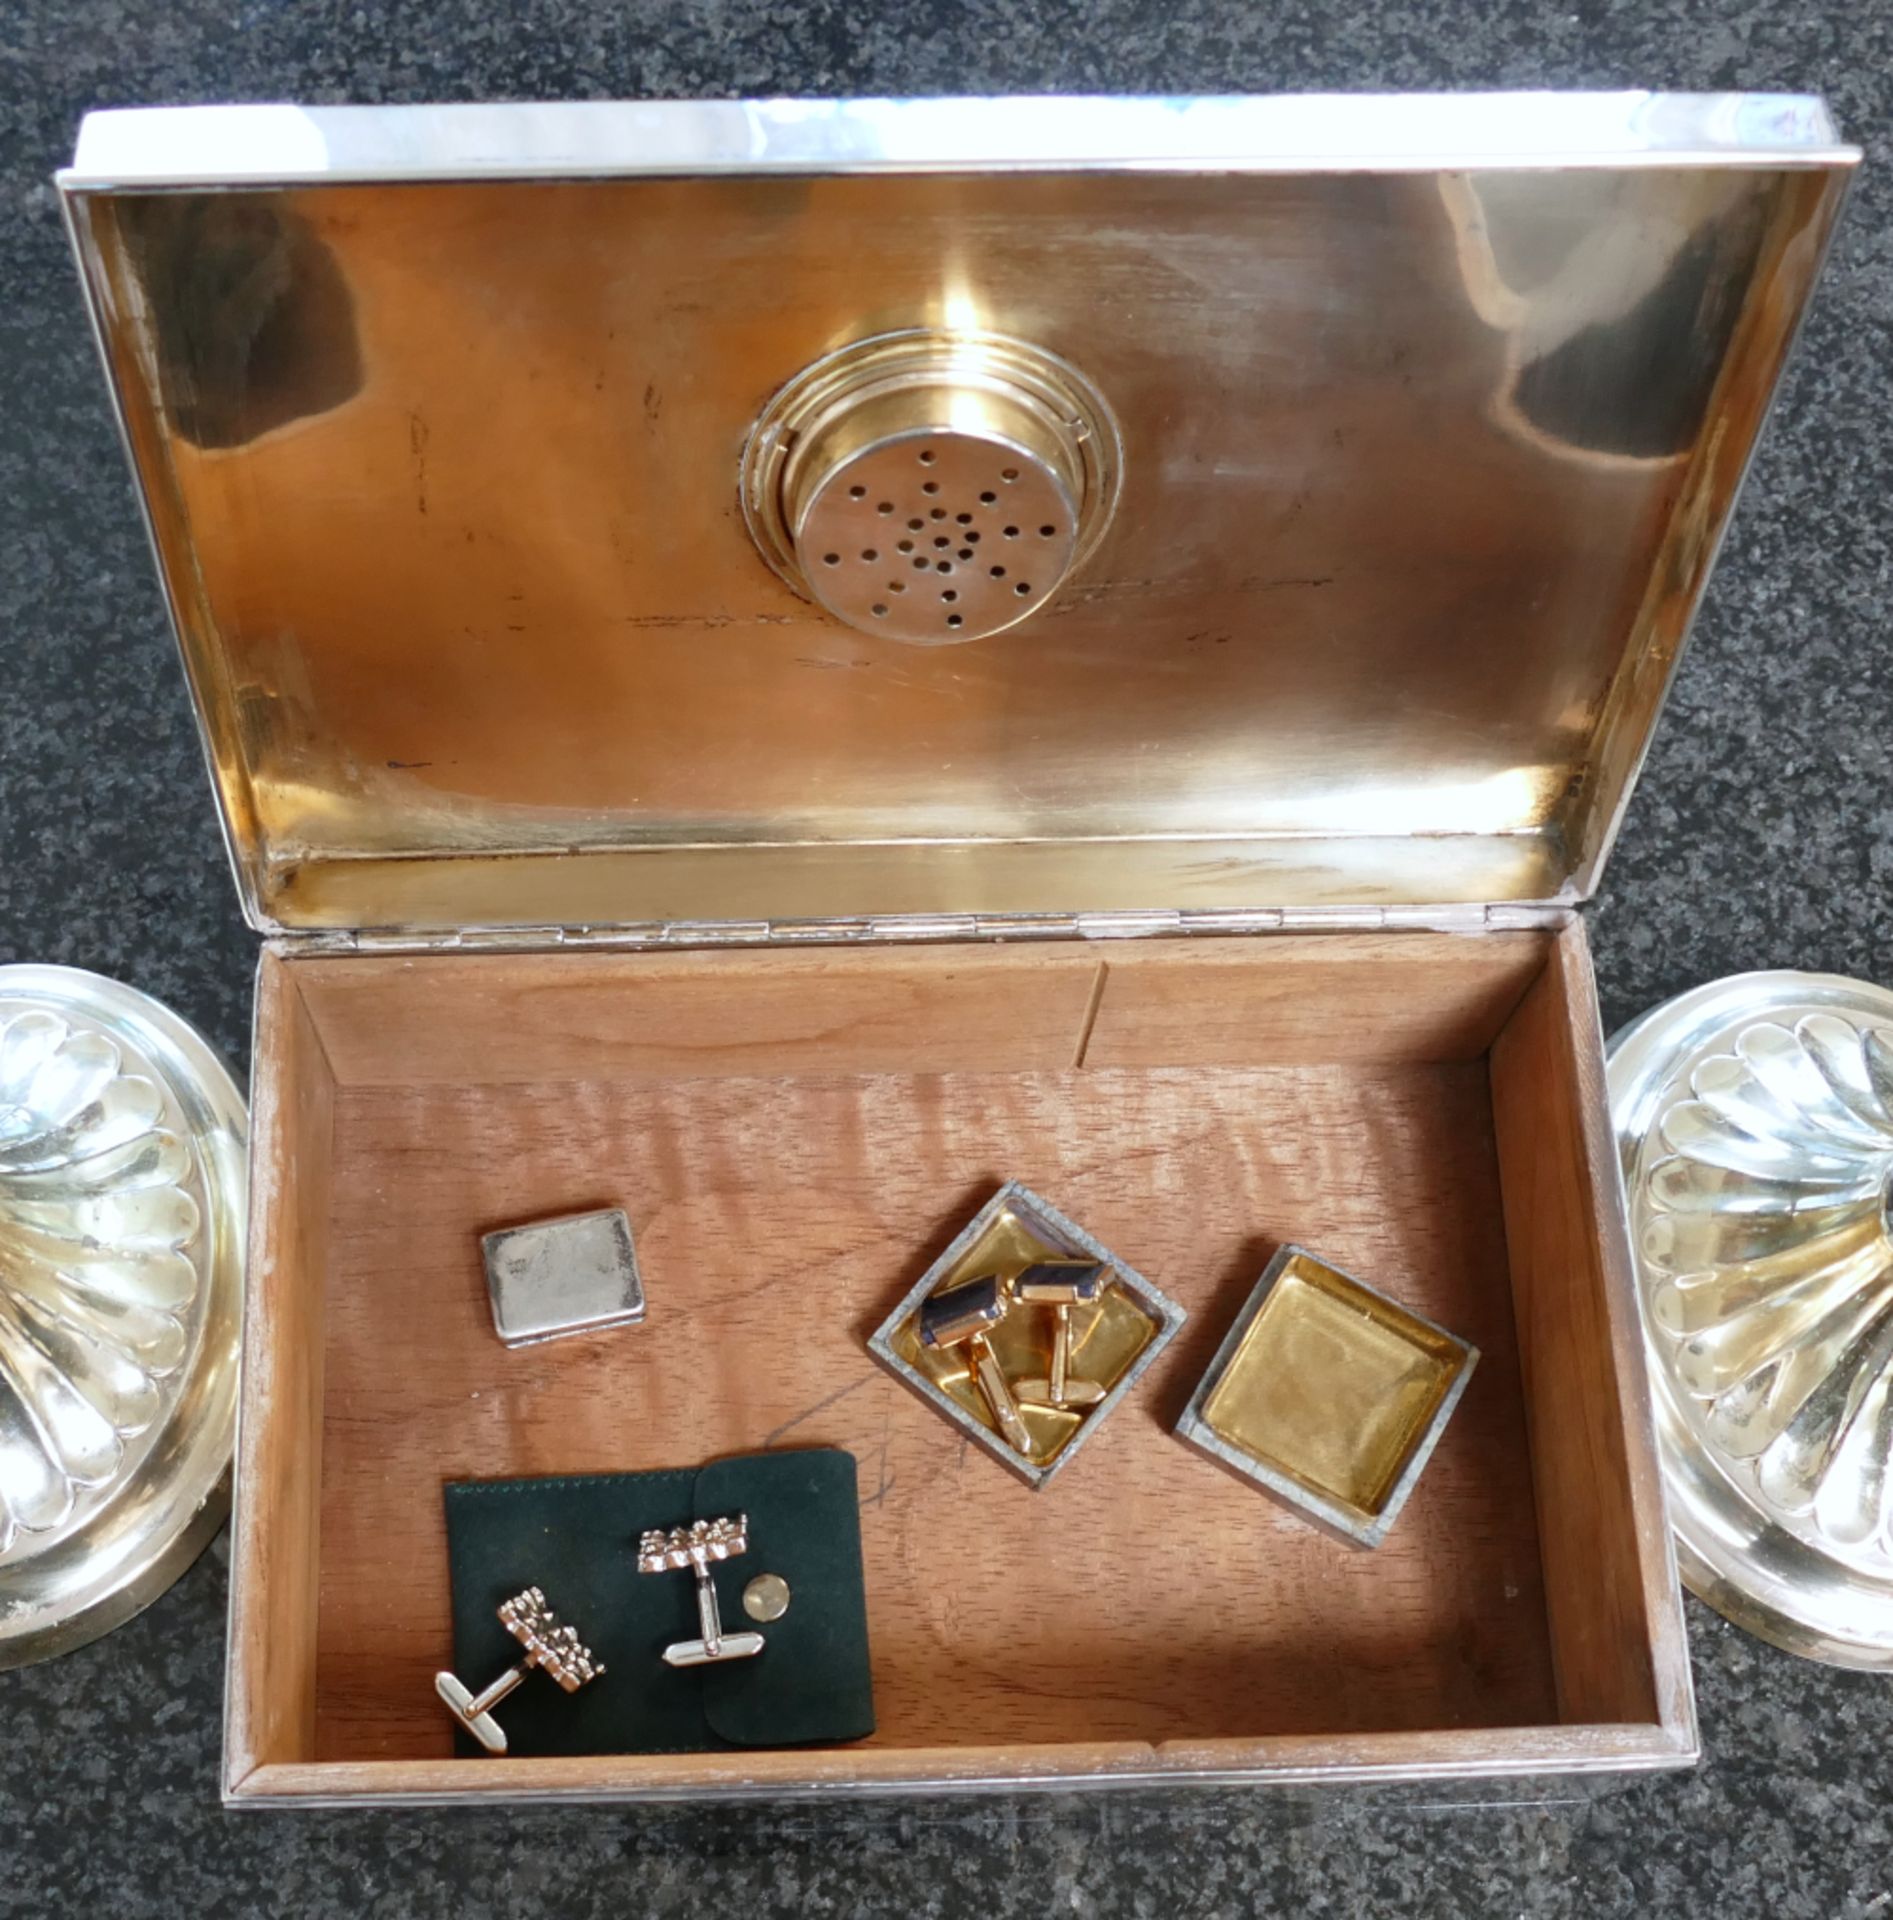 2 Leuchter Silber 925, Manschettenknöpfe Si 800 u.a., Dose Si, Manschettenknöpfe, Dose (Humidor) Si  - Bild 2 aus 3